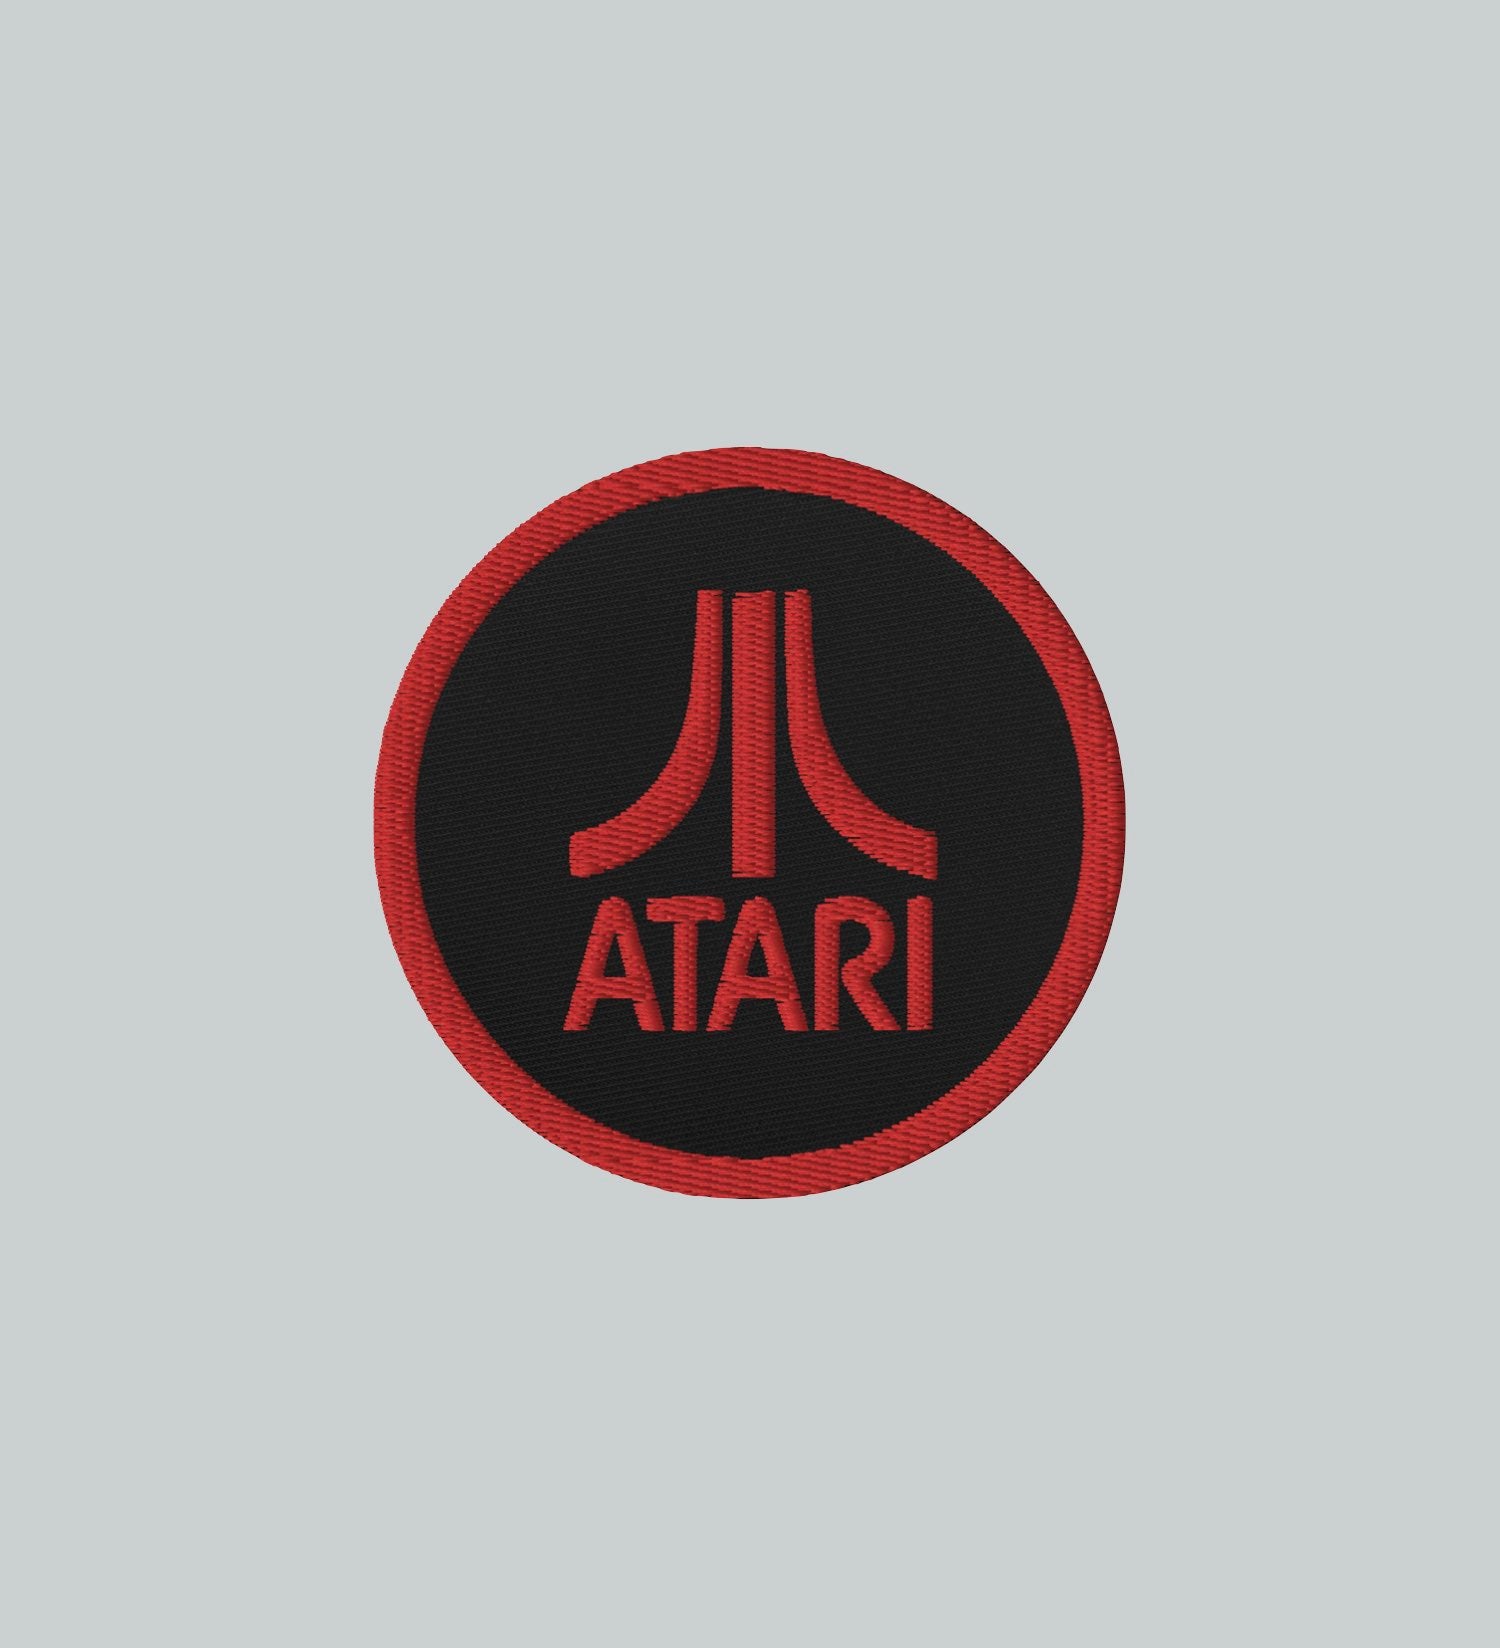 Atari Club